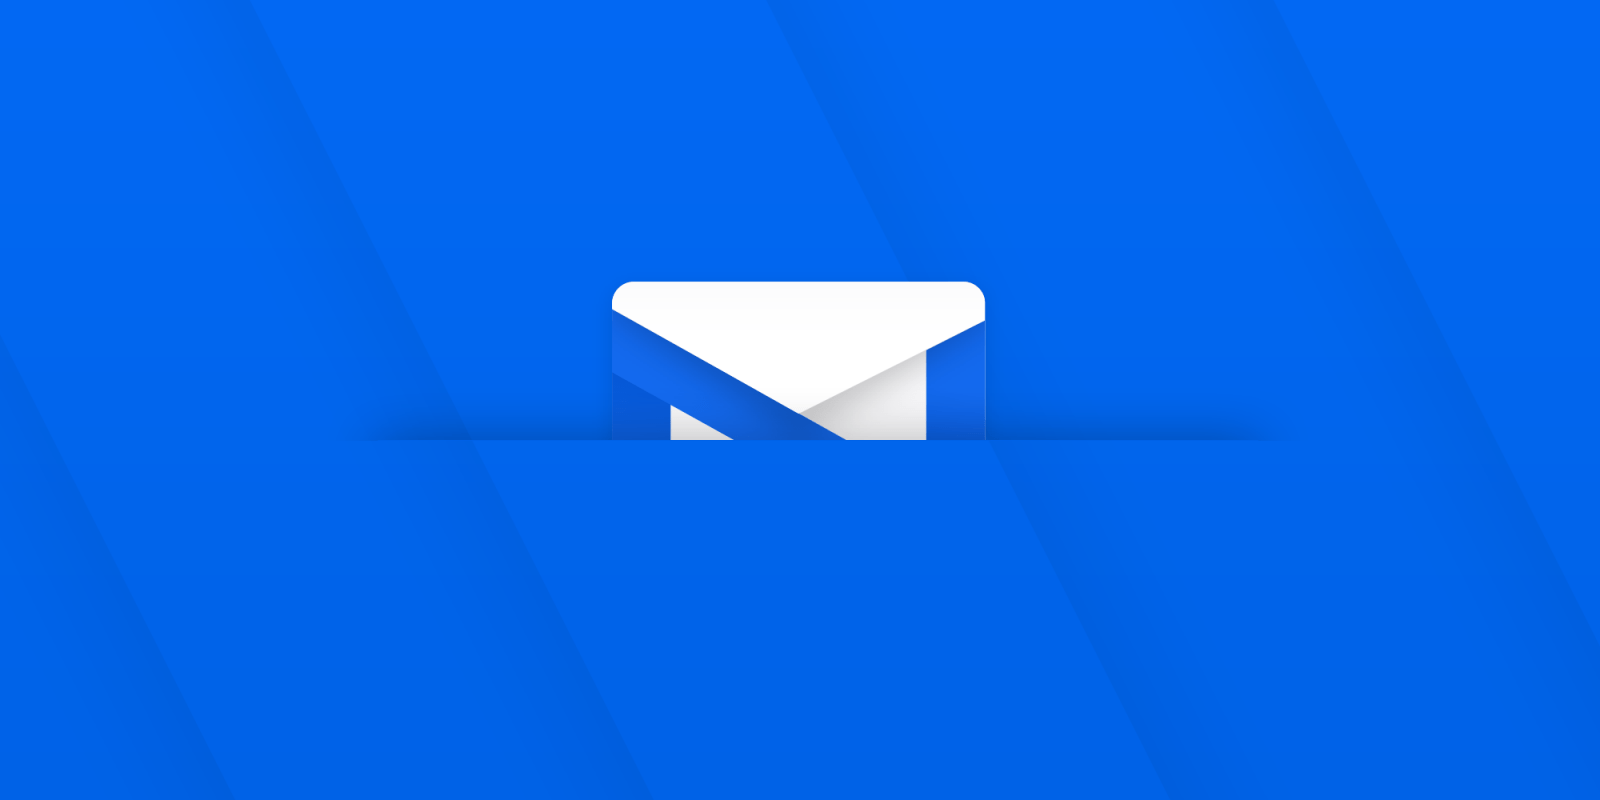 onmail-هي-خدمة-بريد-إلكتروني-جديدة-تركز-على-الخصوصية